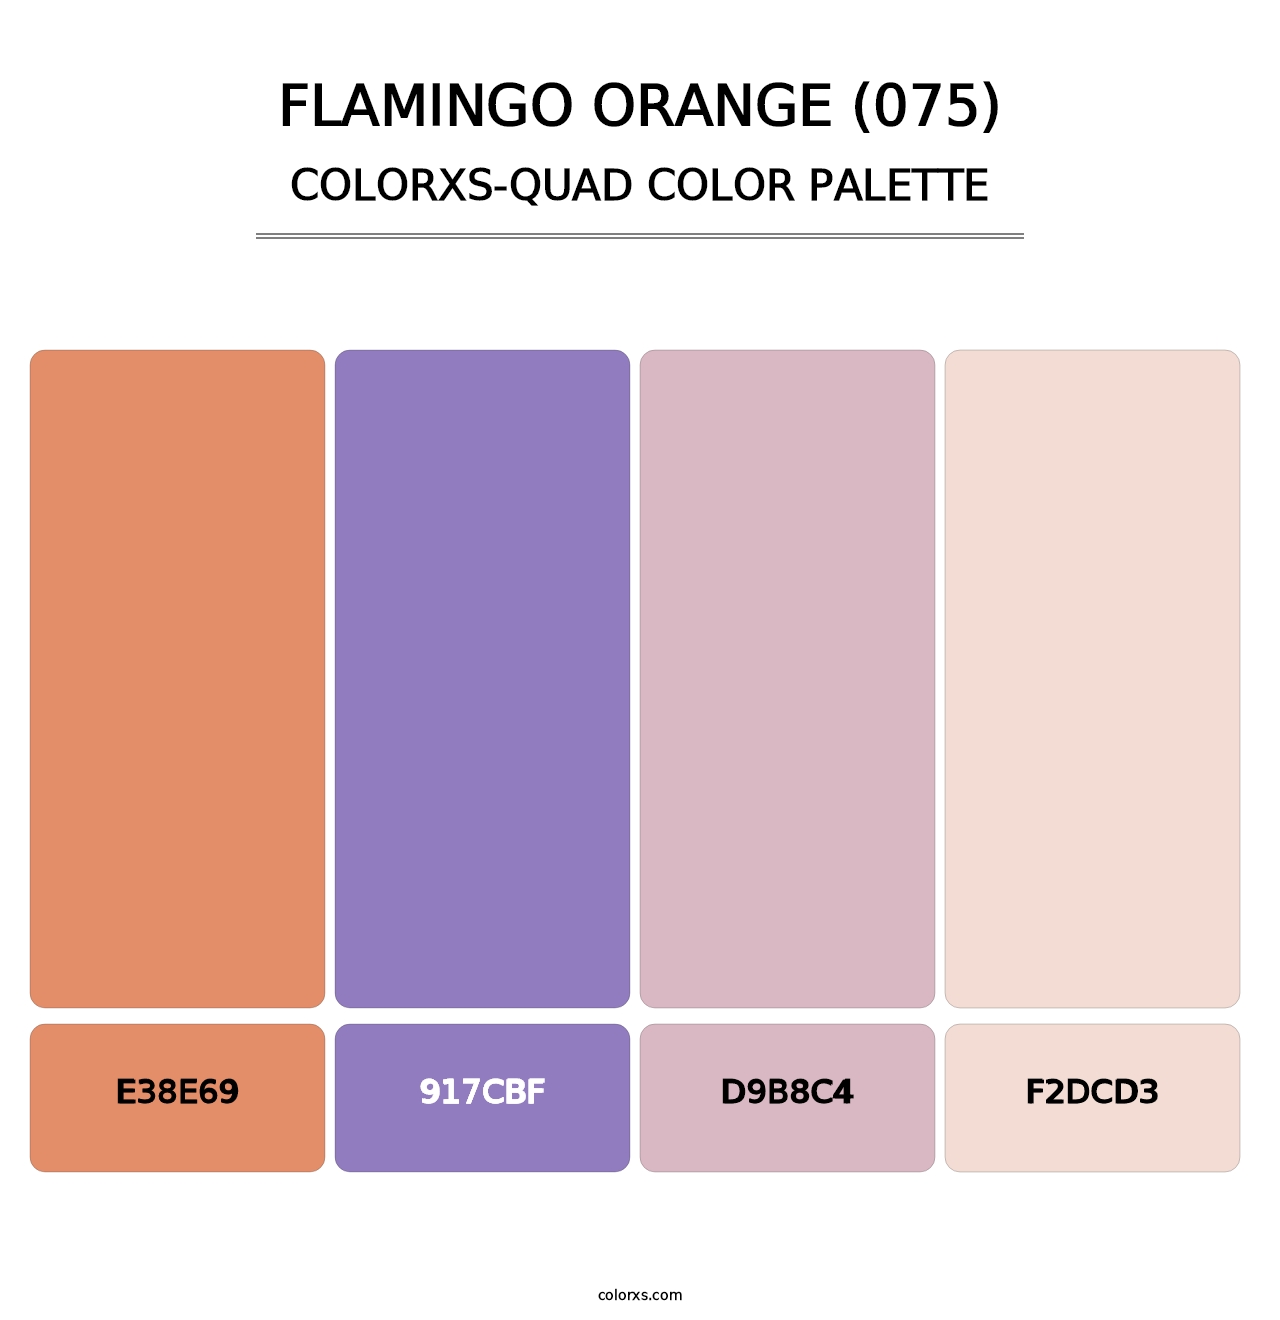 Flamingo Orange (075) - Colorxs Quad Palette